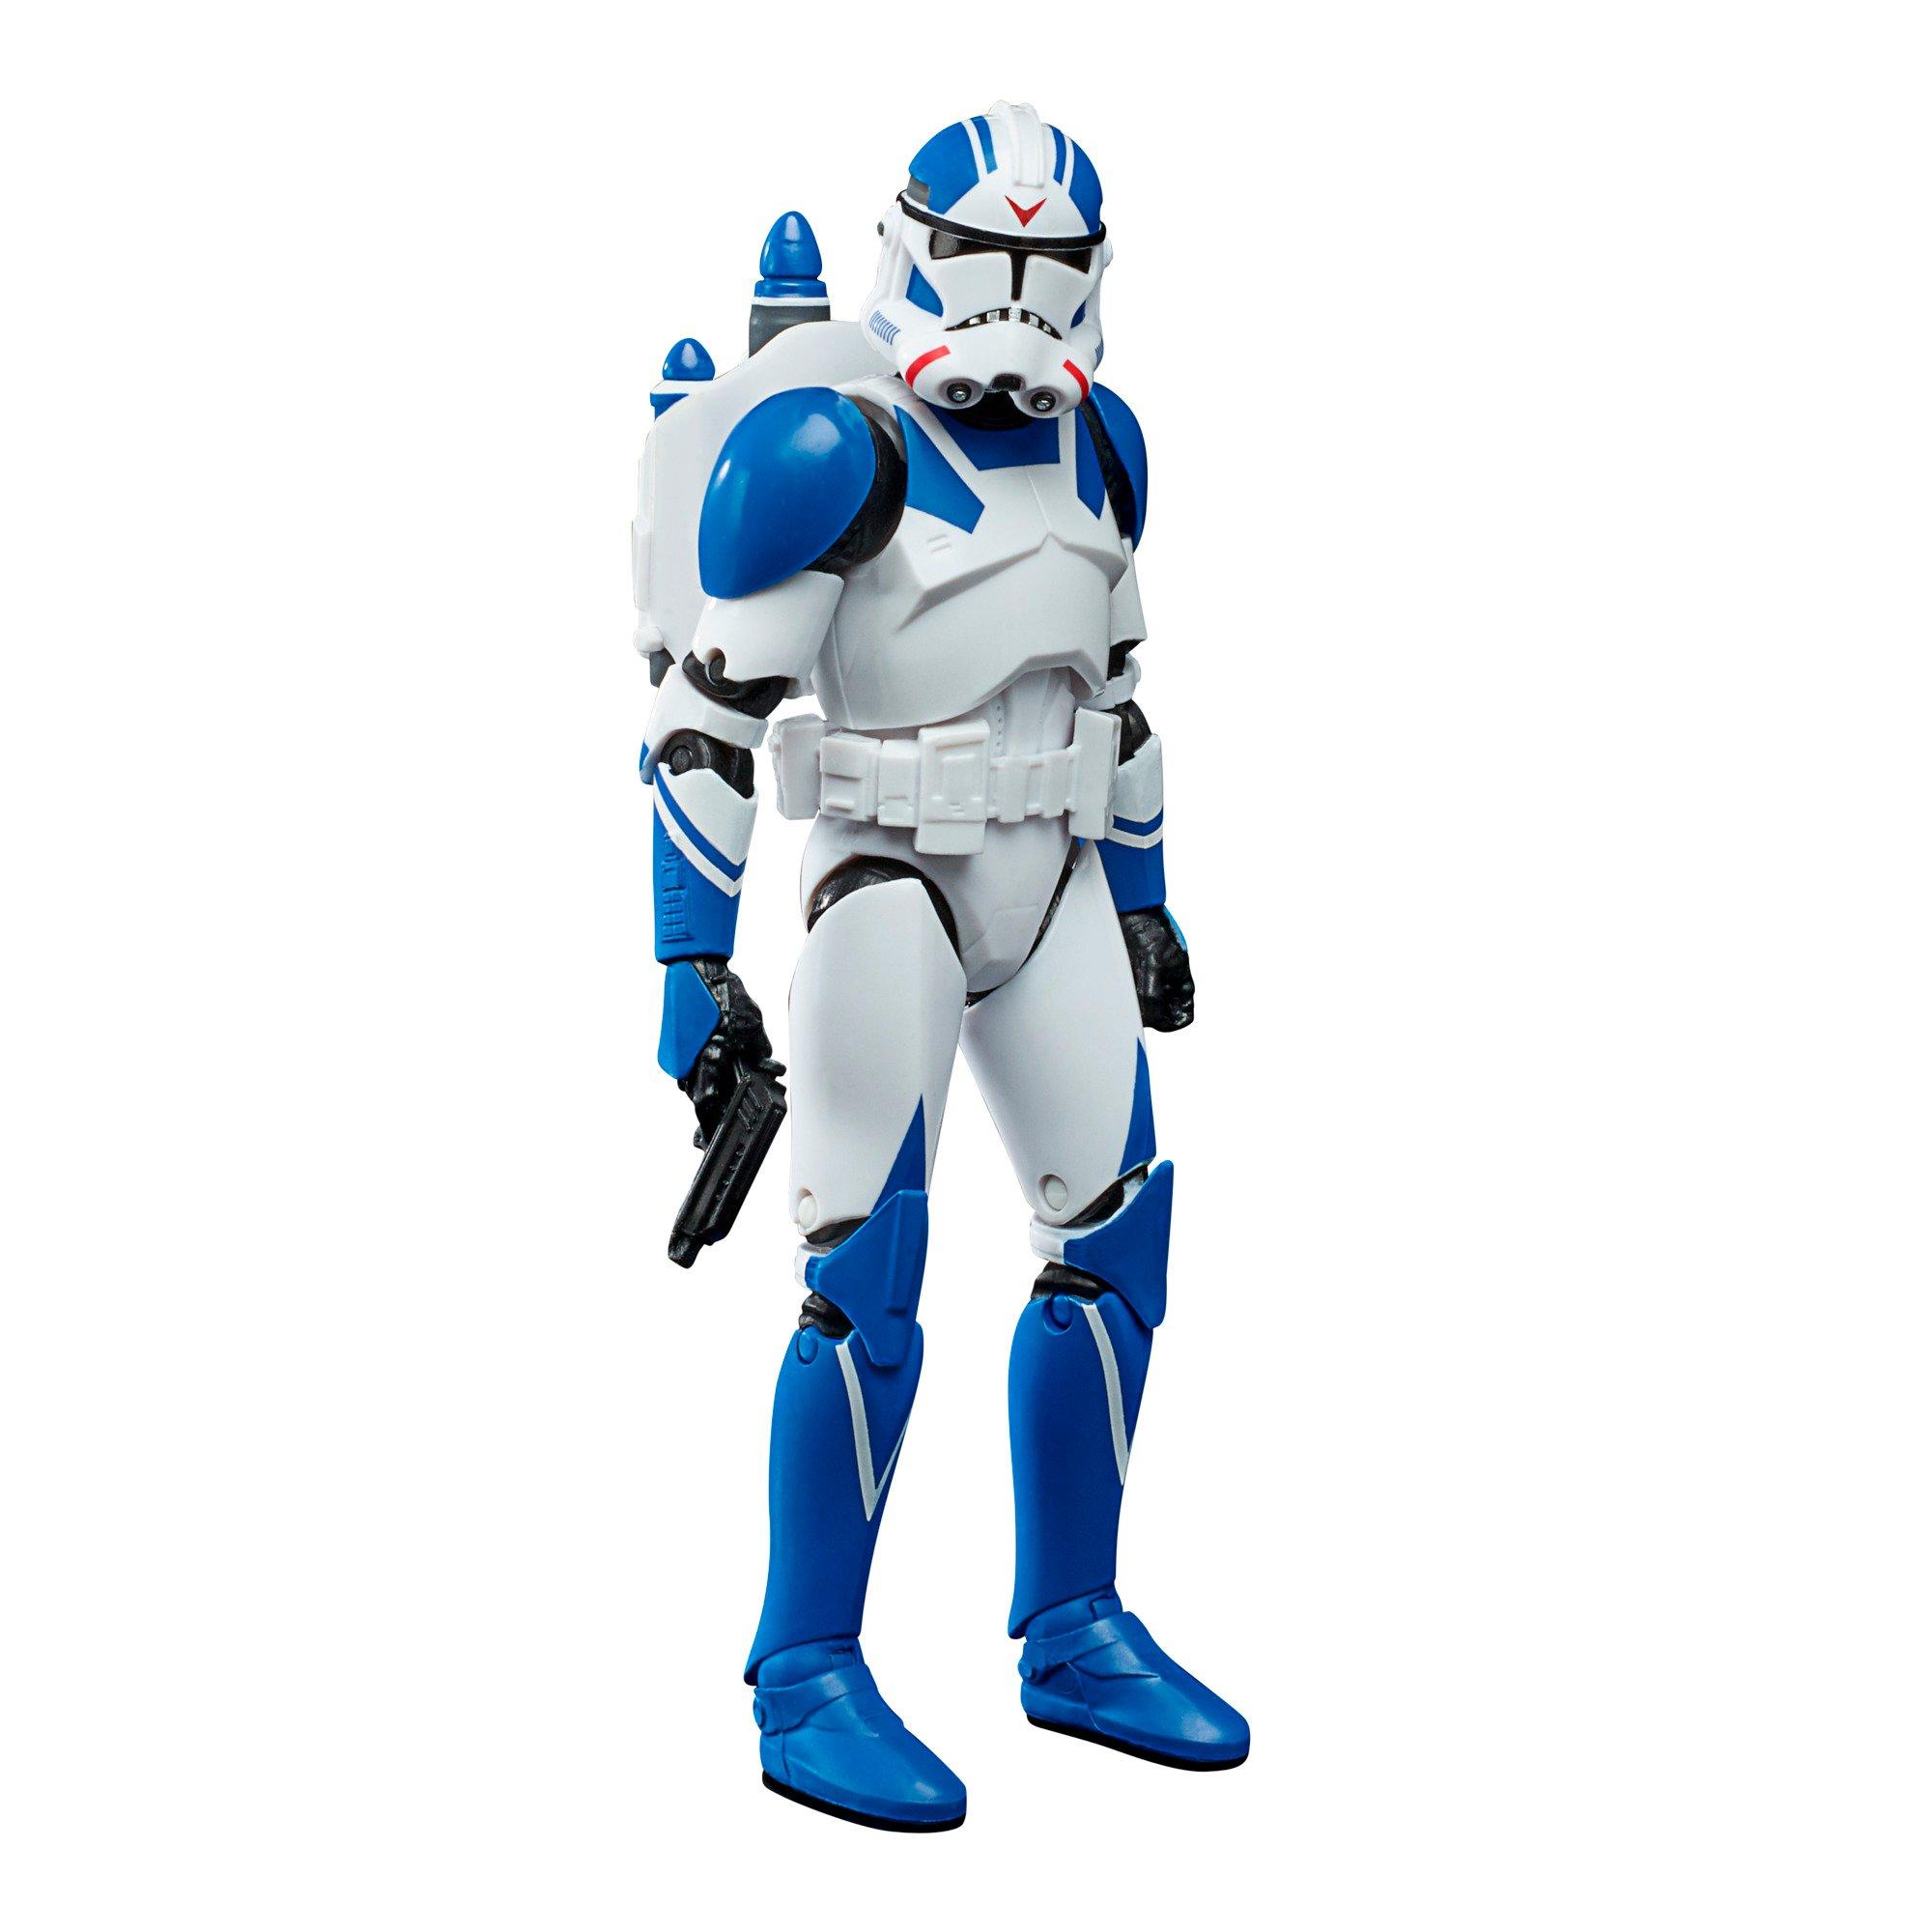 list item 1 of 10 Hasbro The Black Series Star Wars: Battlefront II Jet Trooper Action Figure GameStop Exclusive